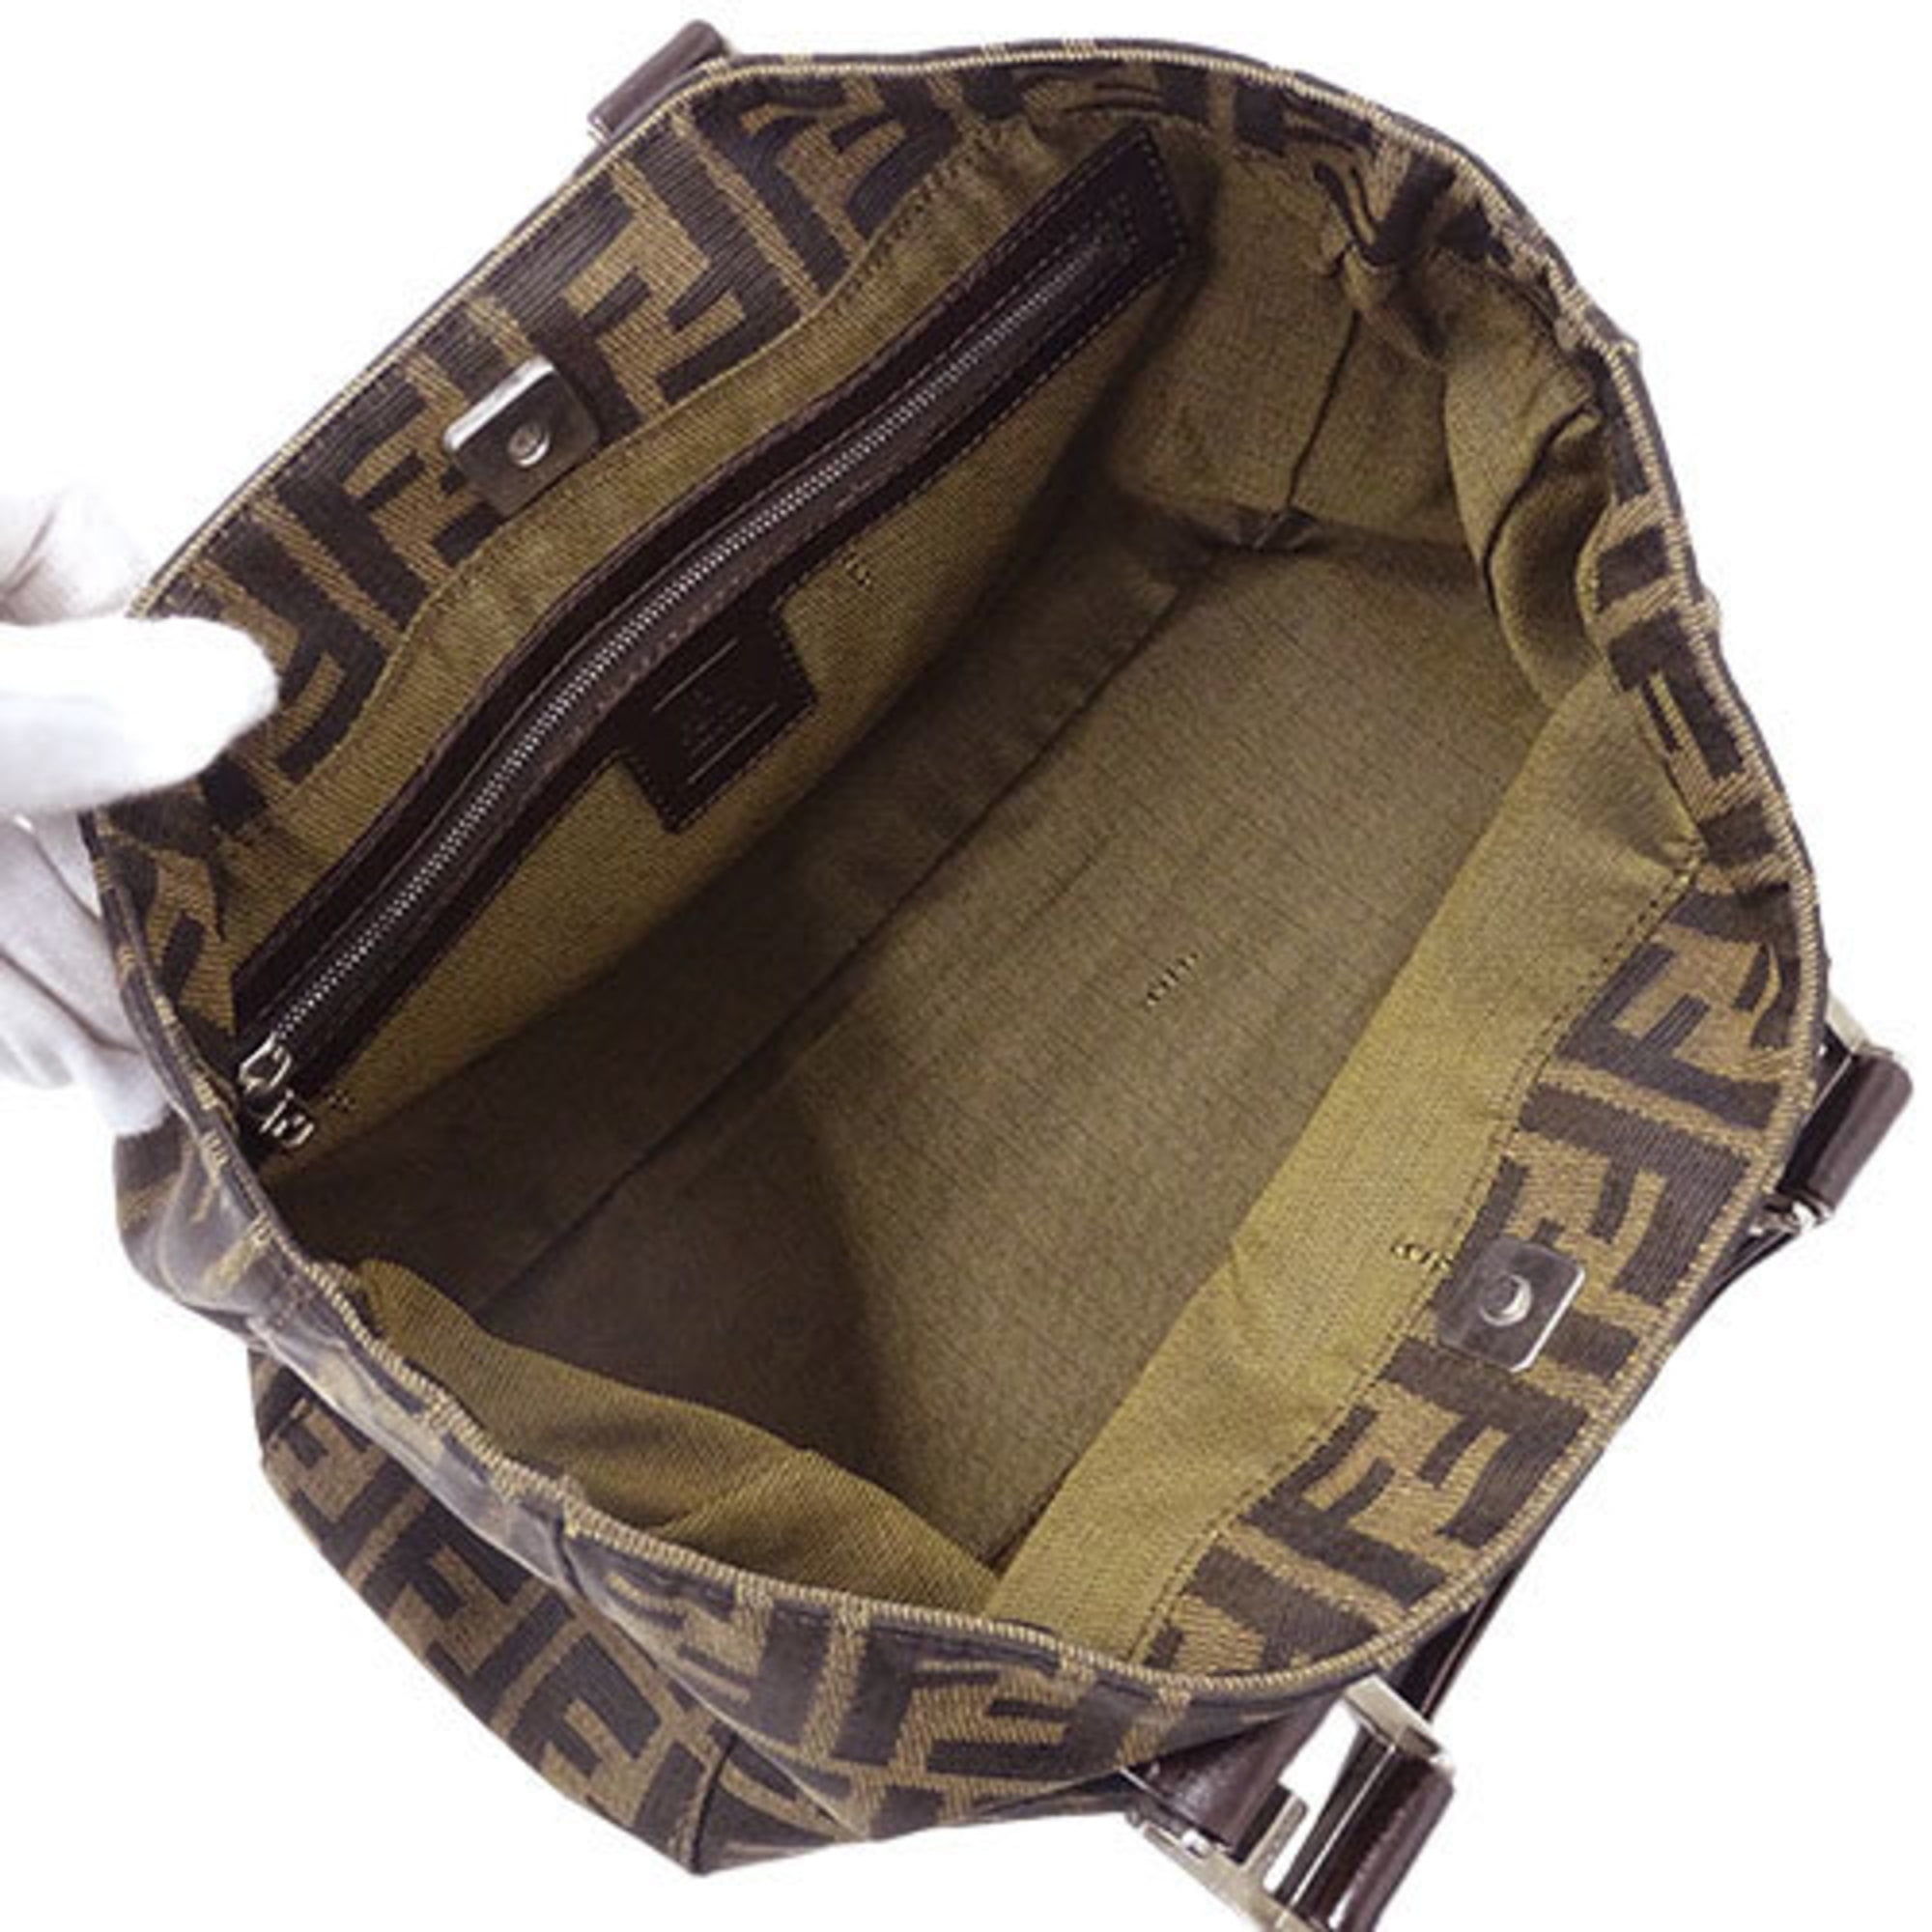 FENDI-Zucca-Canvas-Leather-Shoulder-Bag-Brown-Black-26566 – dct